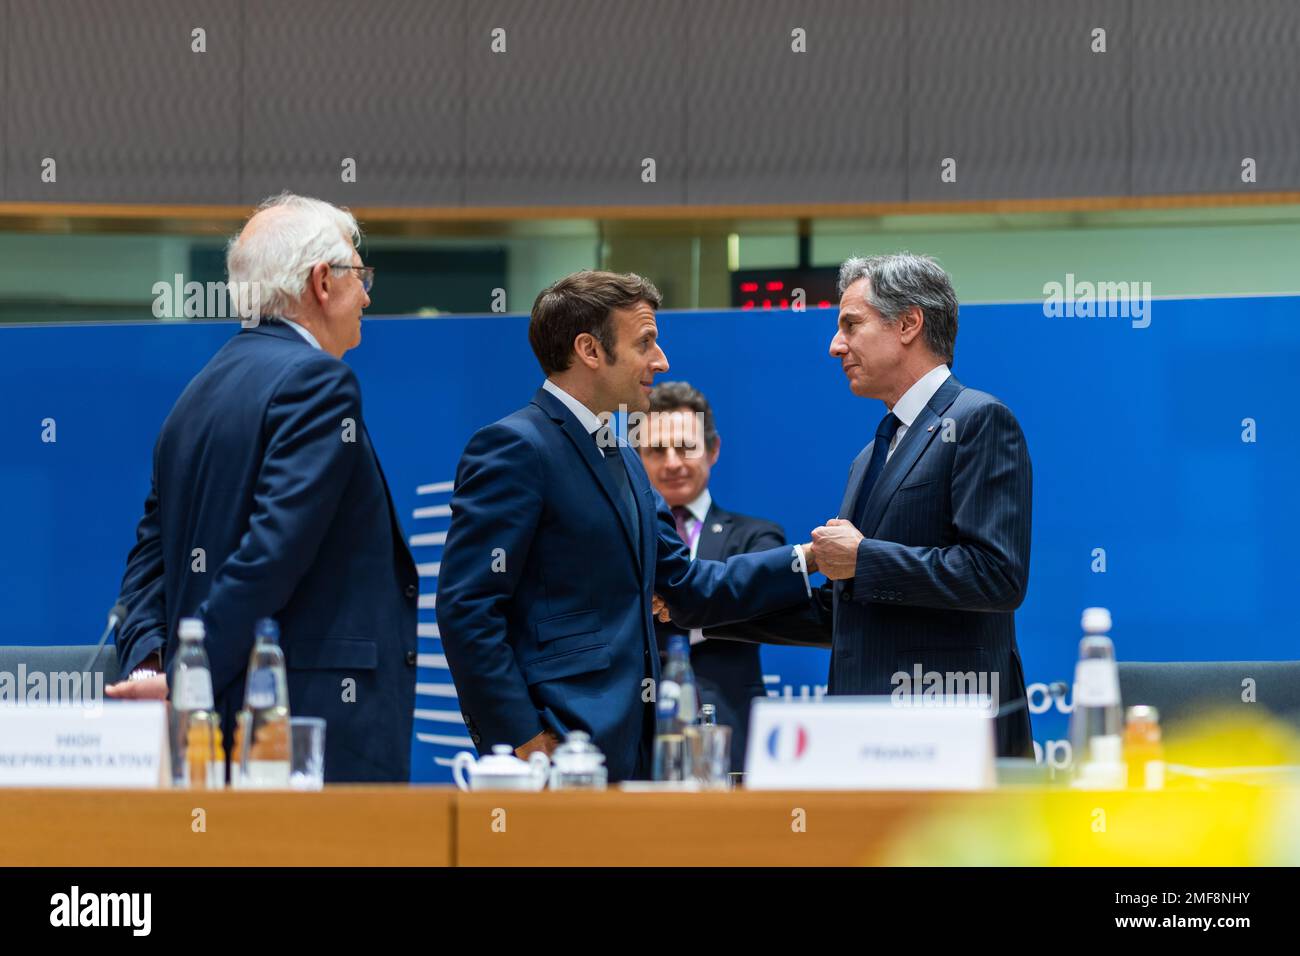 Reportage: Le secrétaire d'État Antony Blinken s'entretient avec le président français Emmanuel Macron lors d'une réunion du Conseil européen jeudi, 24 mars 2022, au siège du Conseil européen à Bruxelles Banque D'Images